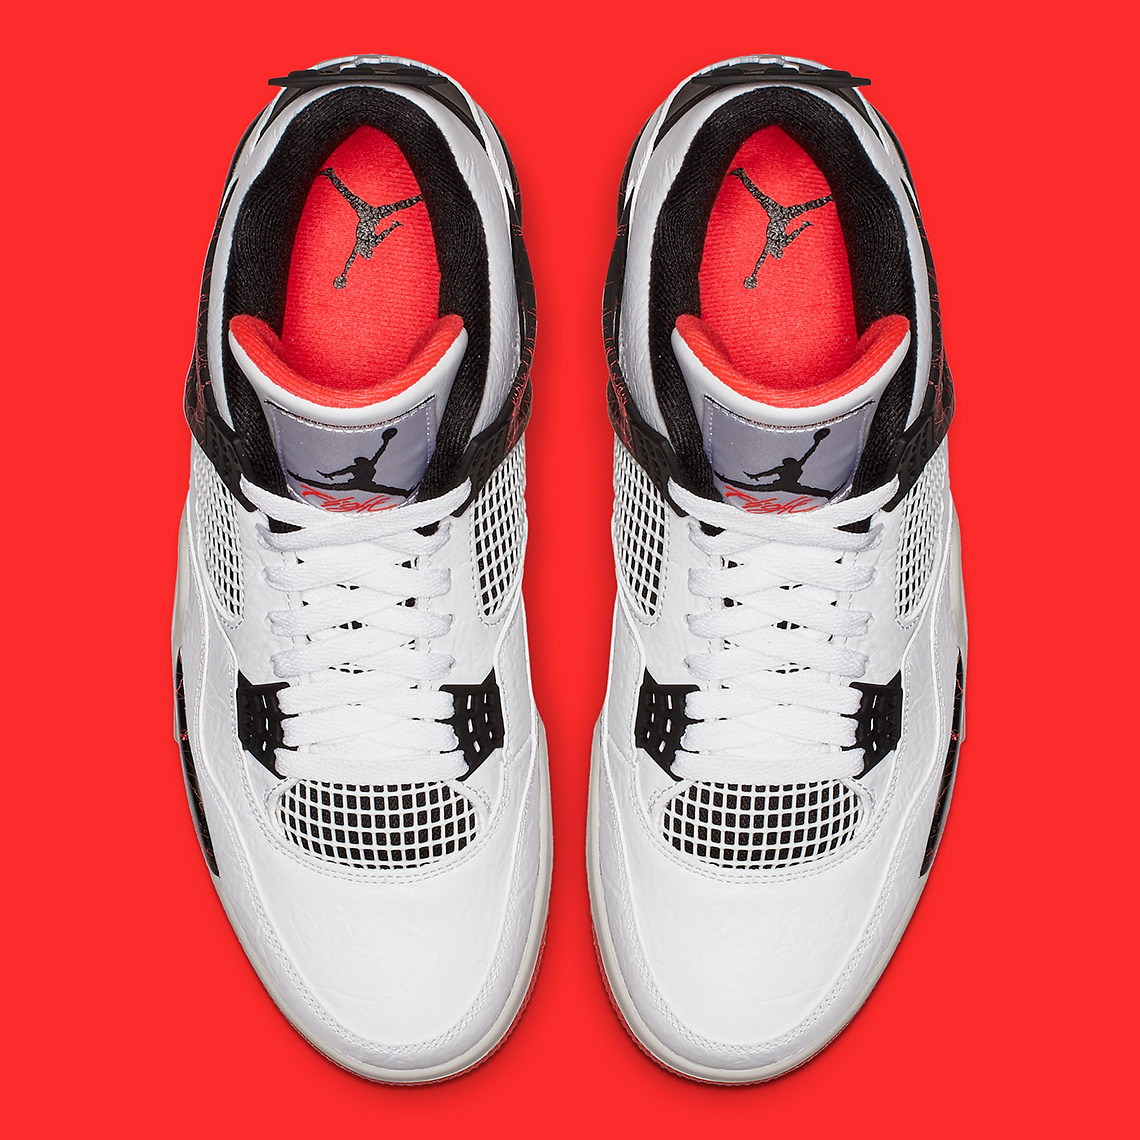 Air Jordan 4 "Hot Release Details